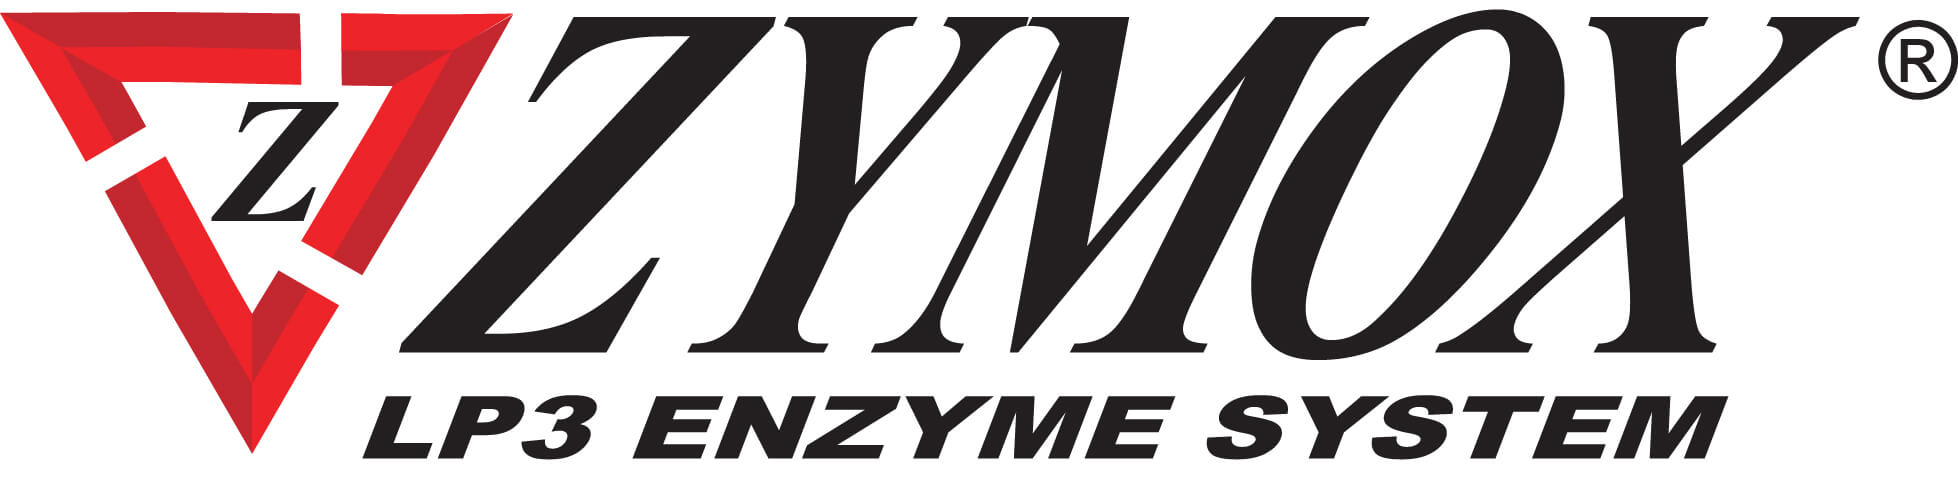 Zymox